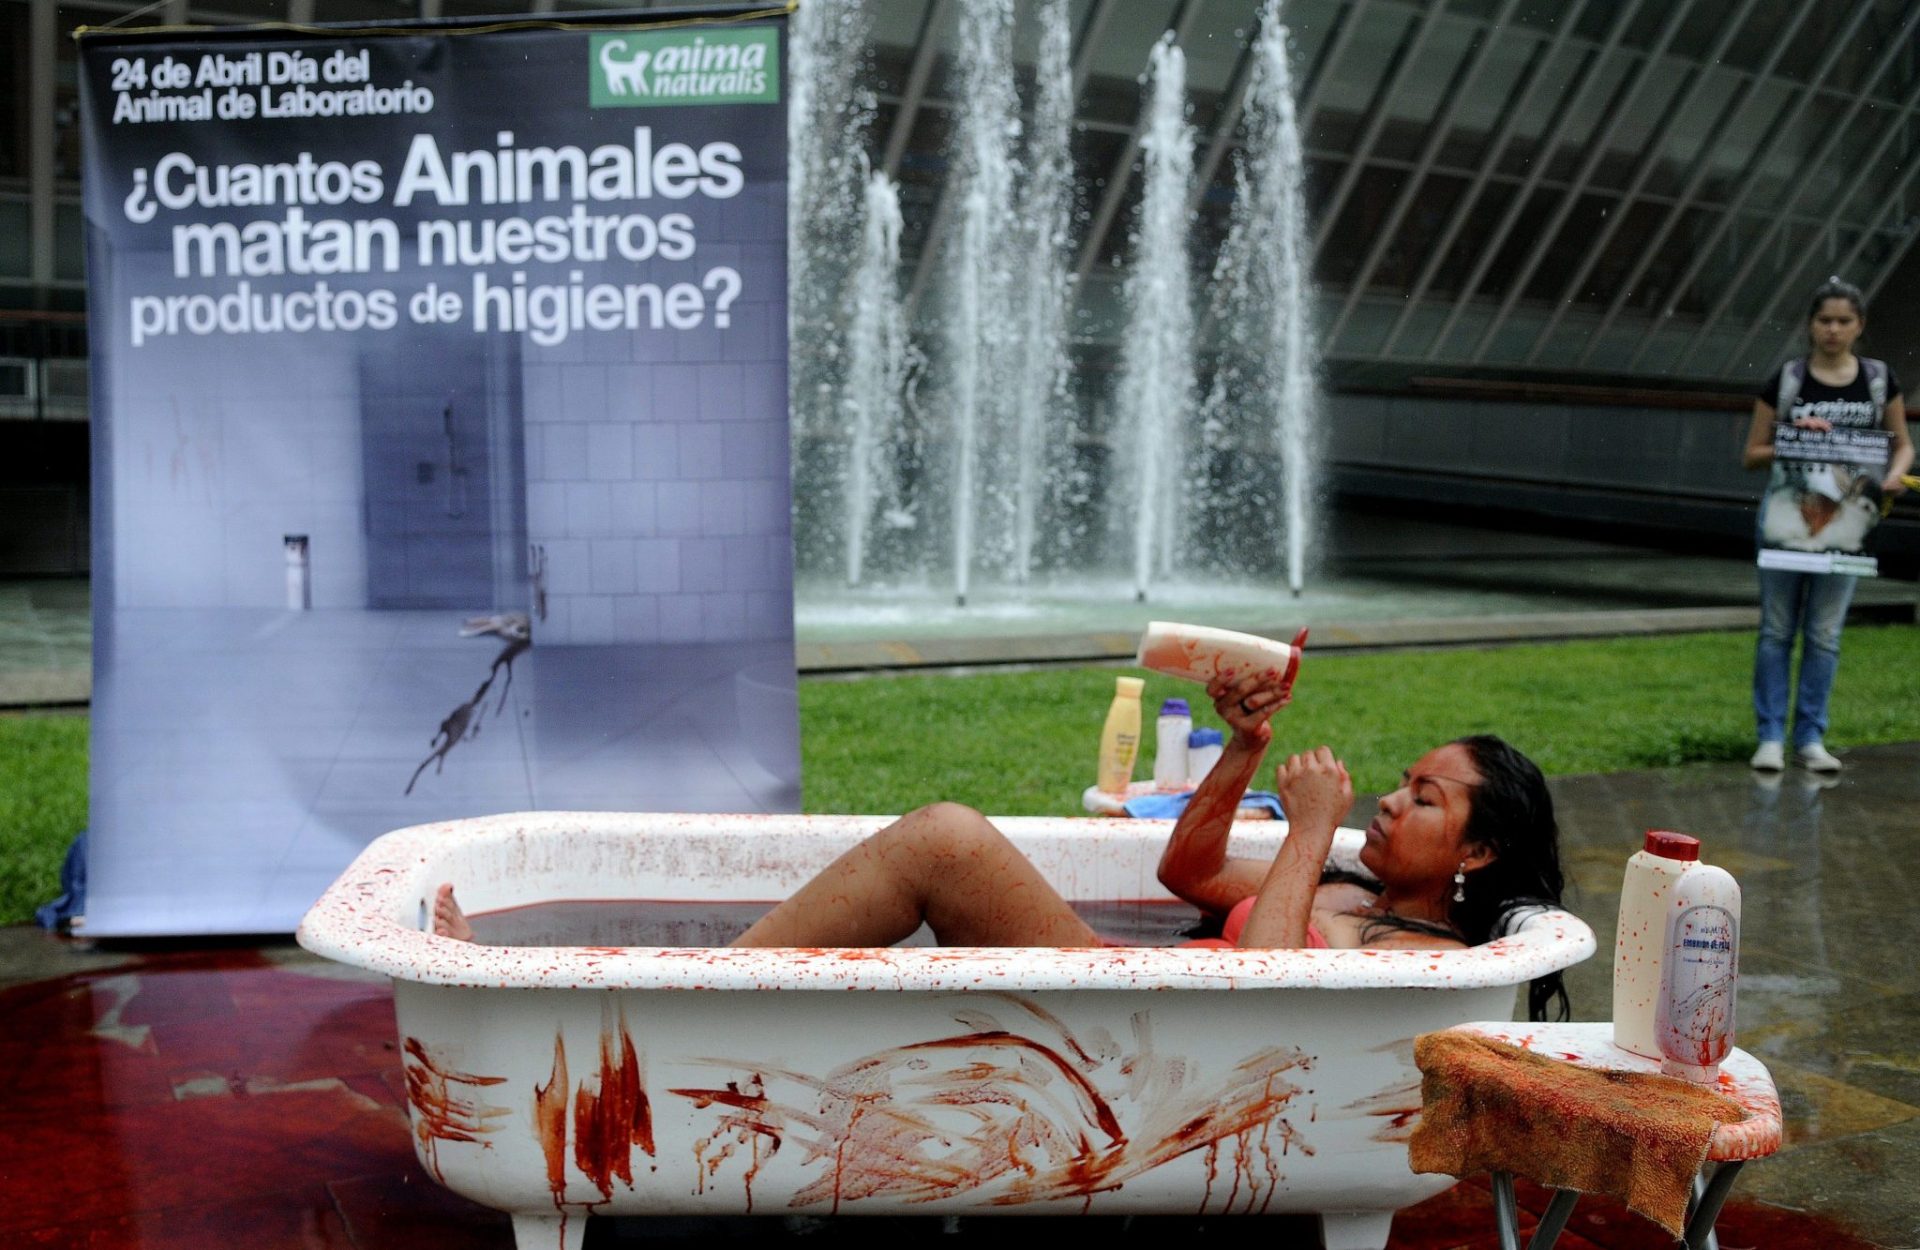  Una activista de la organización Animanaturalis protesta  en el Parque de las Luces de Medellín (Colombia), simulando bañarse en sangre para denunciar el uso de animales en la experimentación científica, en el marco del día del animal de laboratorio. EFE/LUIS EDUARDO NORIEGA